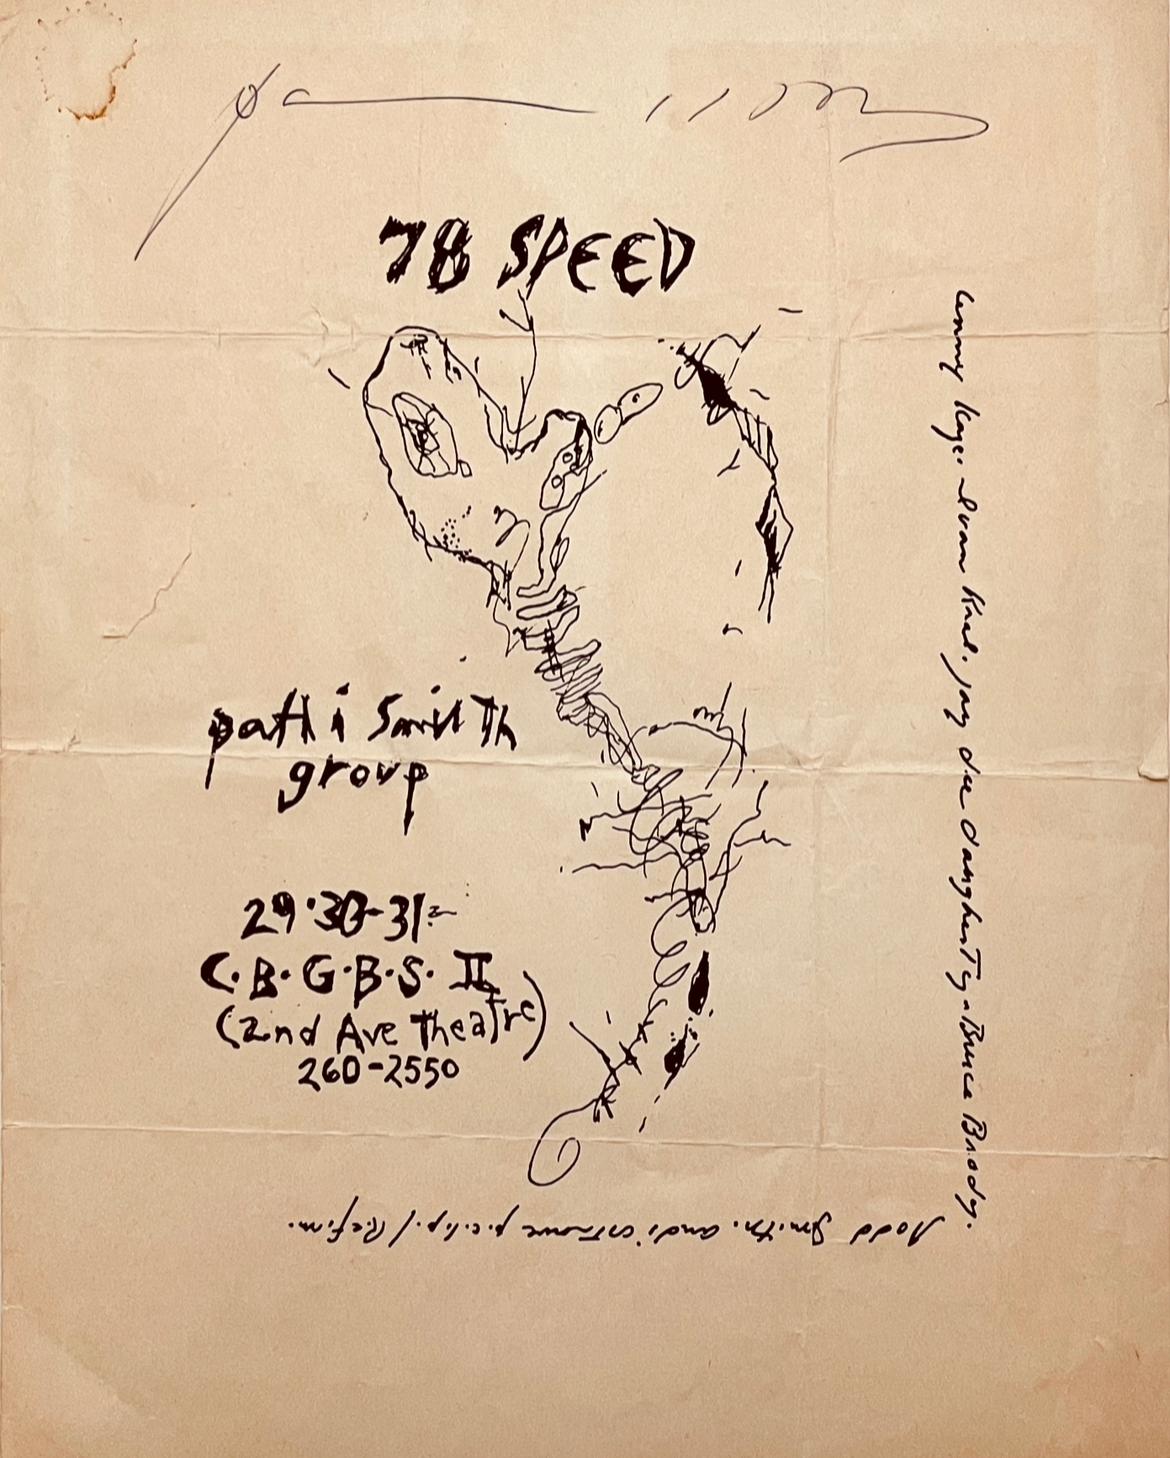 Patti Smith 78 Speed 1977 :
Rare flyer original signé à la main pour les concerts du Patti Smith Group au CBGB en 1977. Le flyer a été conçu par Patti Smith à partir d'un de ses dessins de l'époque ; le spectacle historique intitulé "78 Speed" ayant